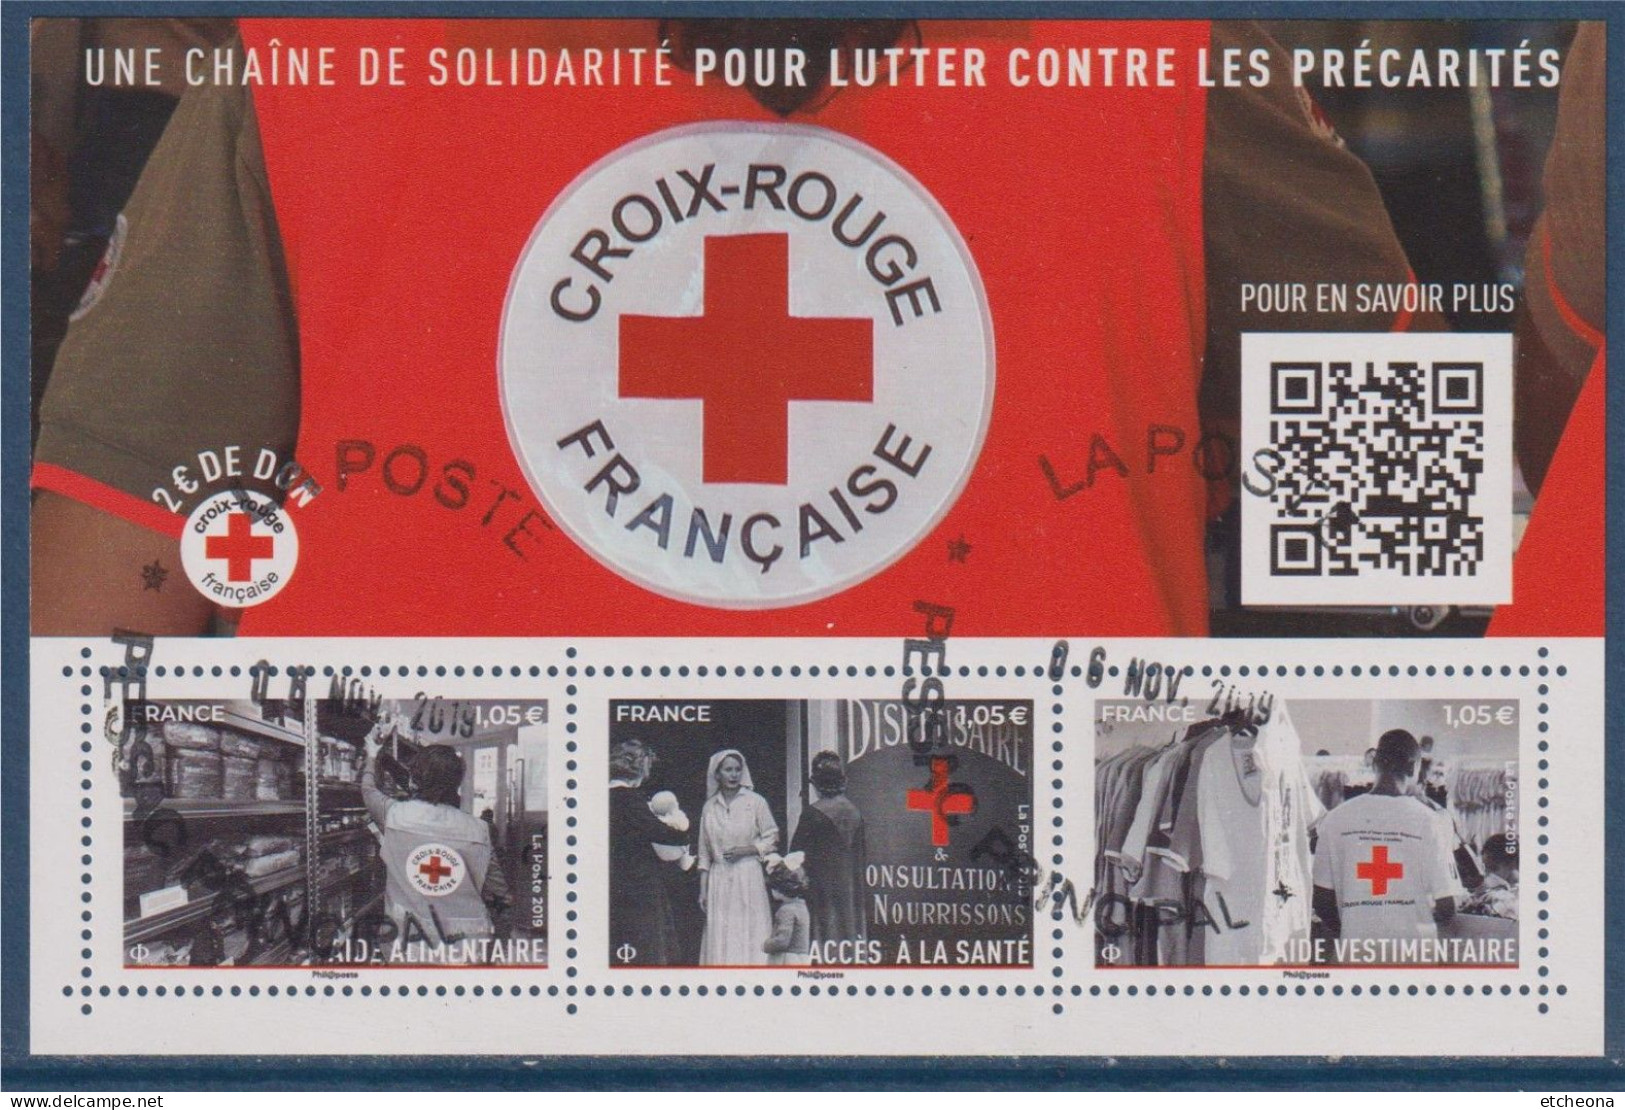 Croix Rouge 2019 Bloc Oblitéré F5350, Aide Alimentaire 5350, Vestimentaire 5352, Et Accès à La Santé 5351 - Red Cross